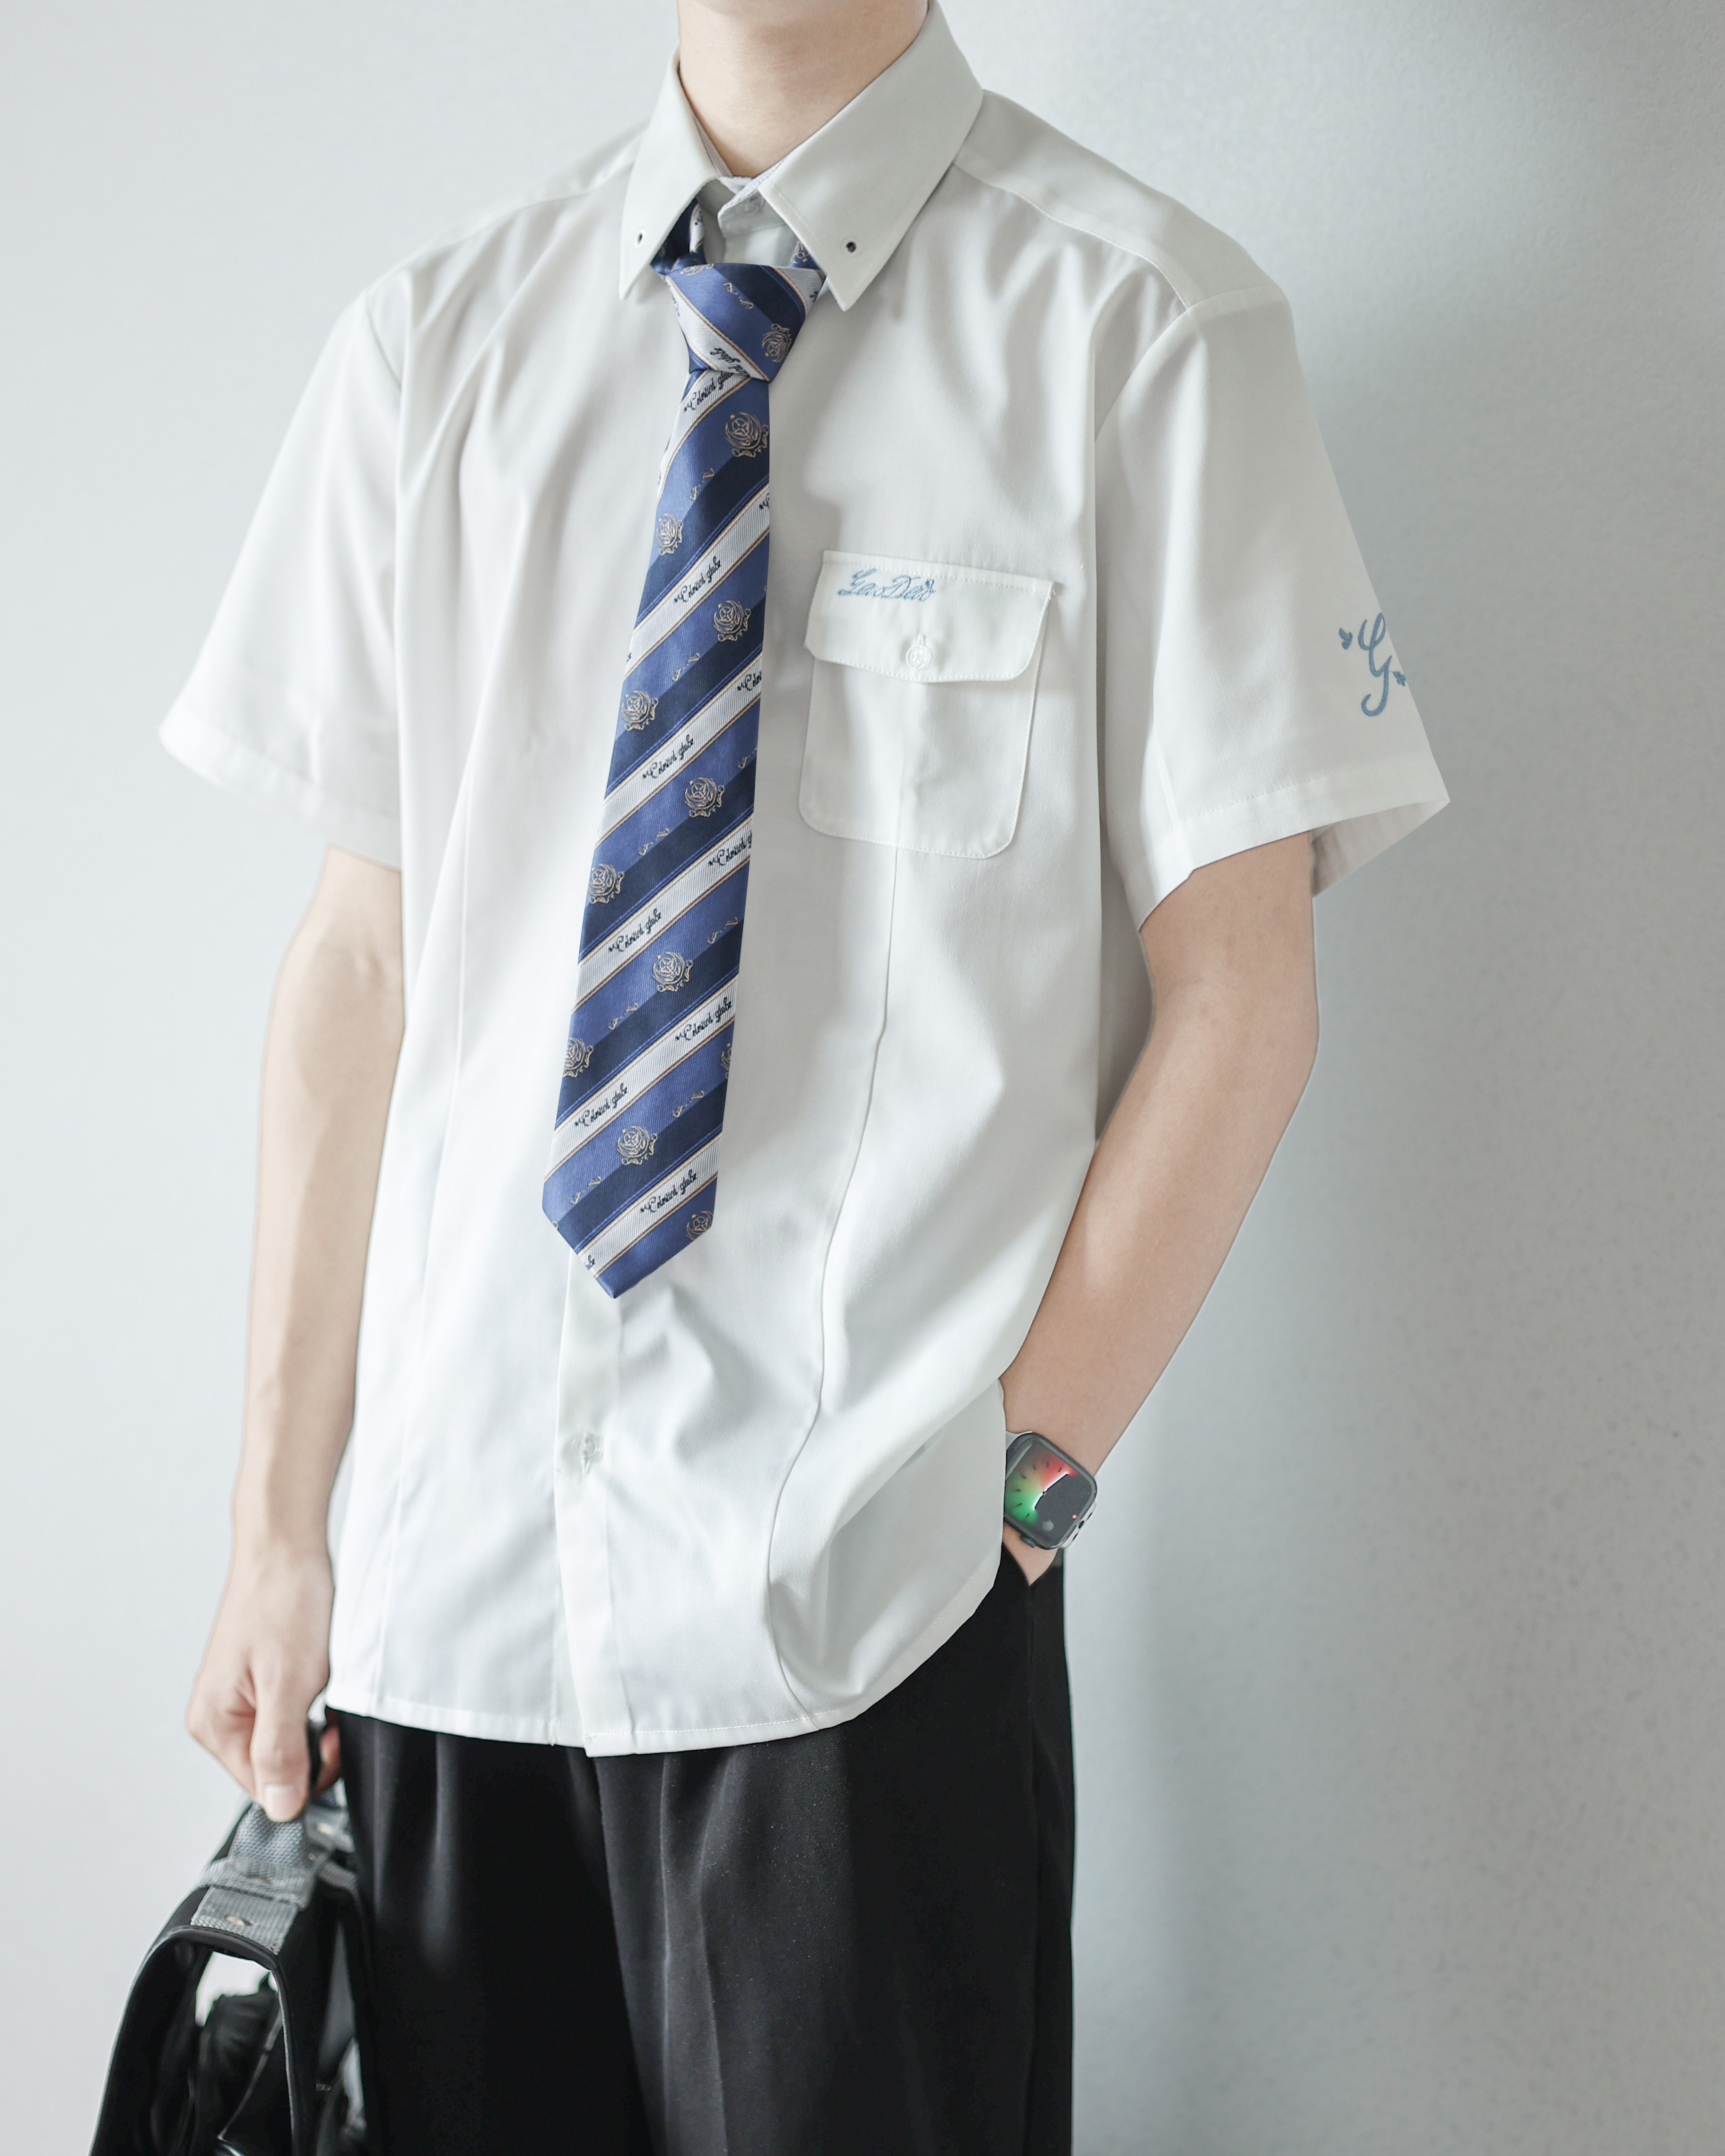 【潘特维拉】高岛学园白衬衫 JK/DK制服情侣长袖短袖刺绣上衣